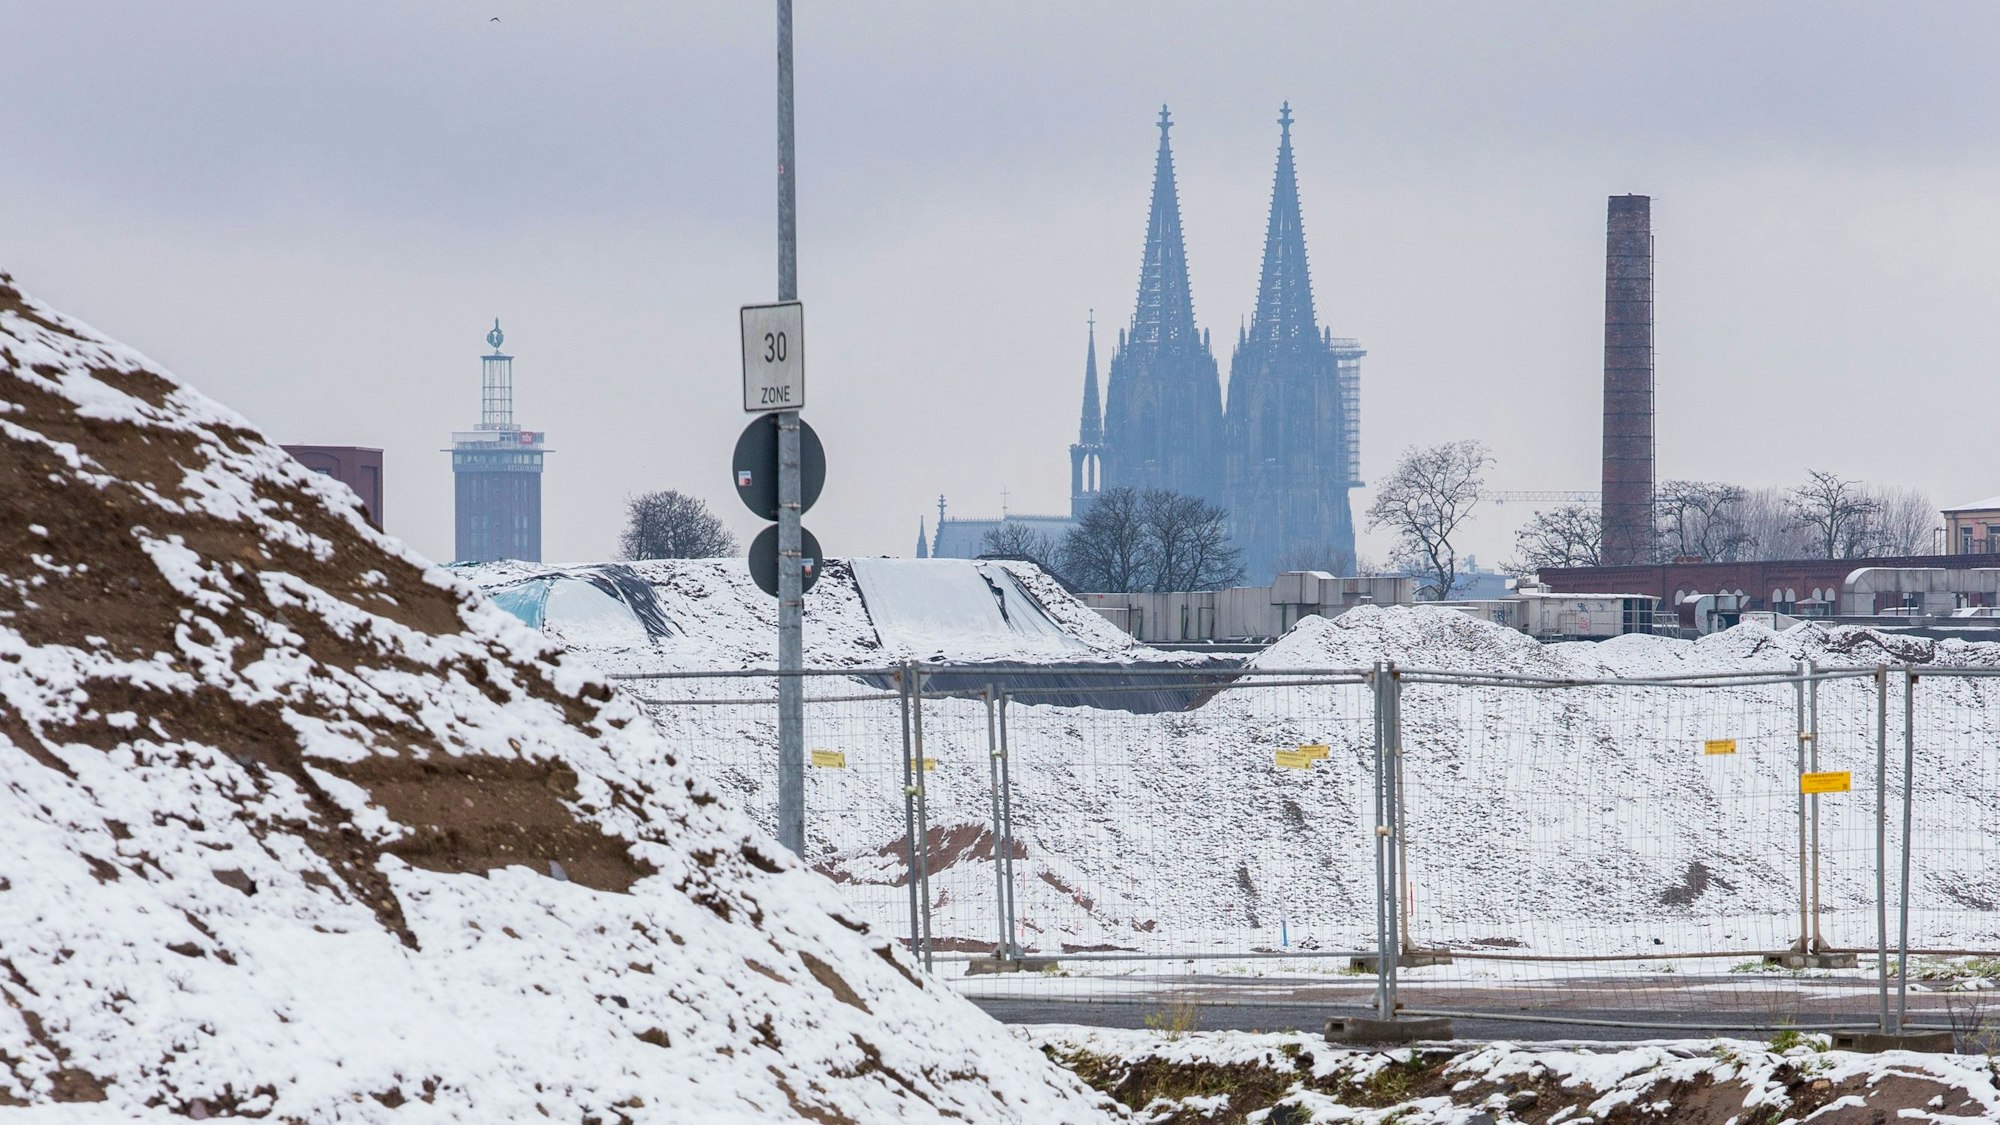 Der Kölner Dom schimmert hinter einer schneebedeckten Landschaft.